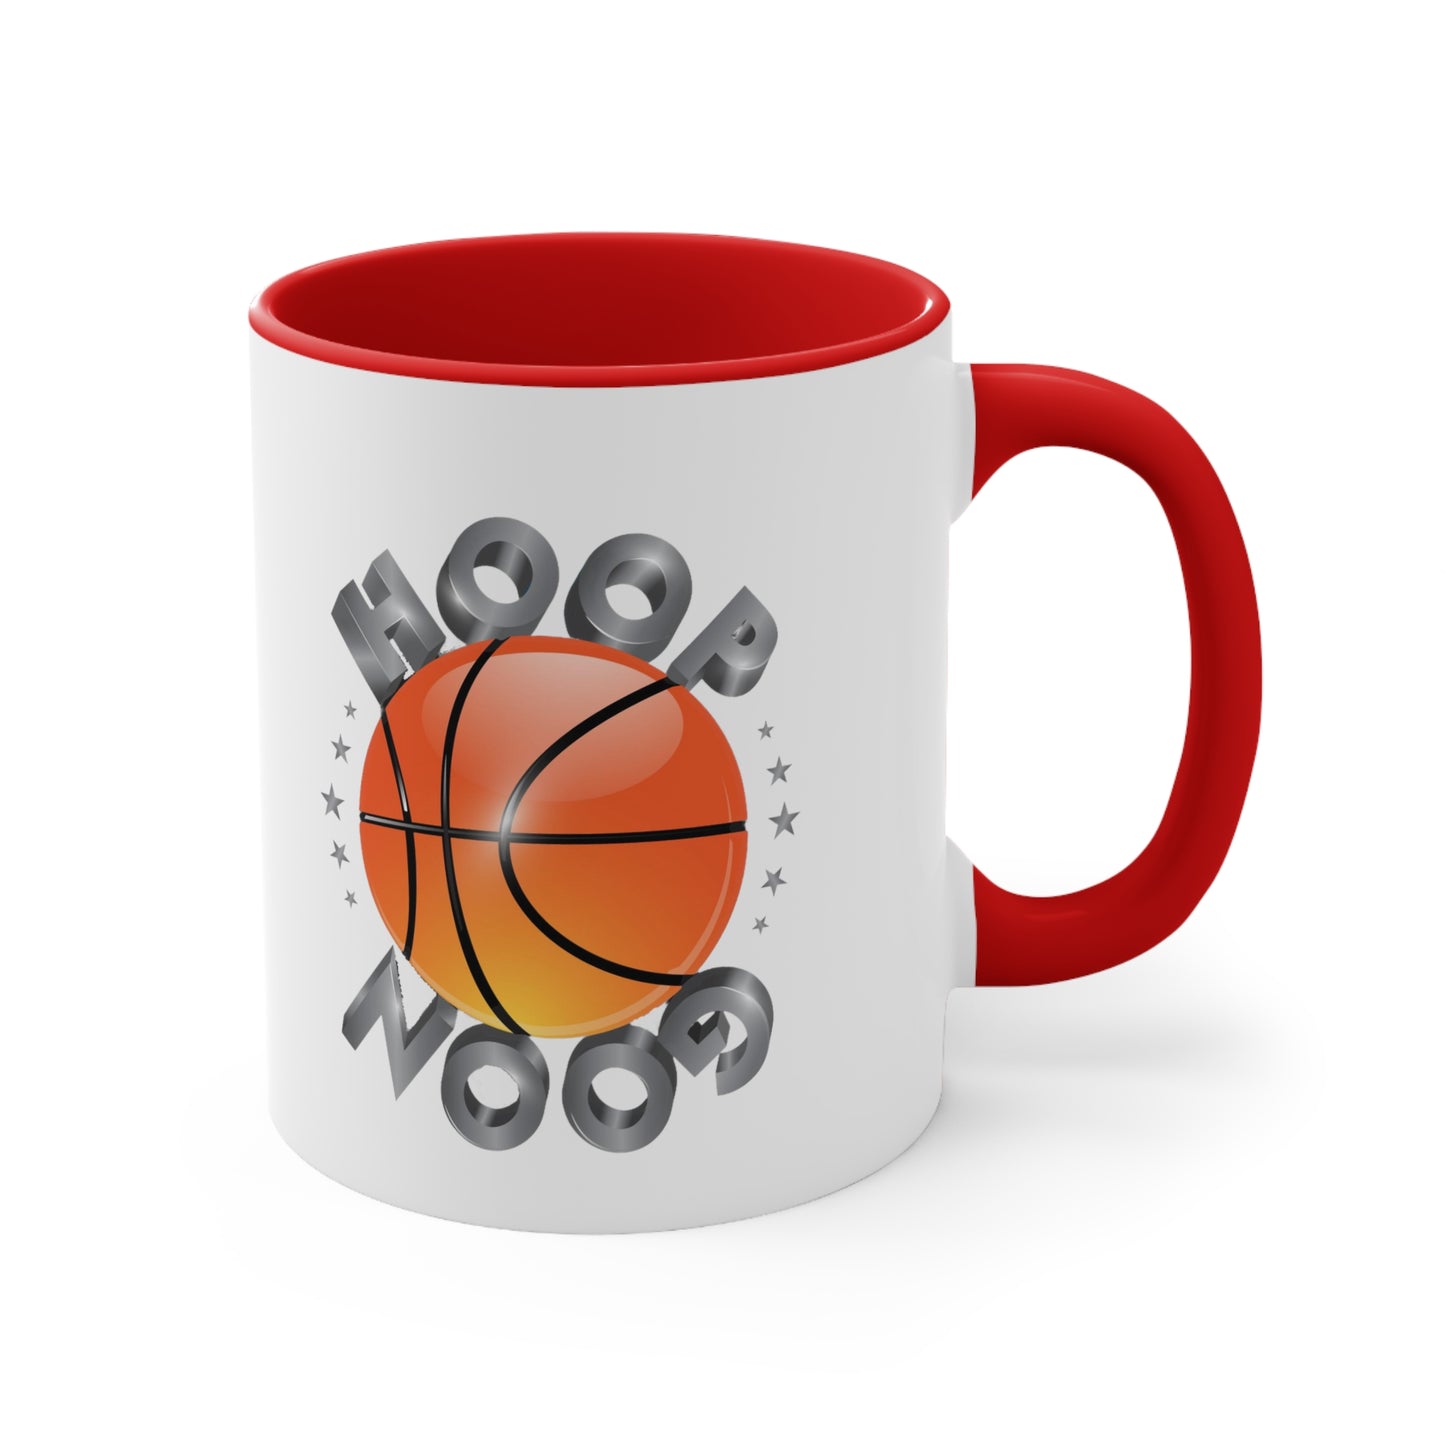 HoopGoon Accent Coffee Mug, 11oz